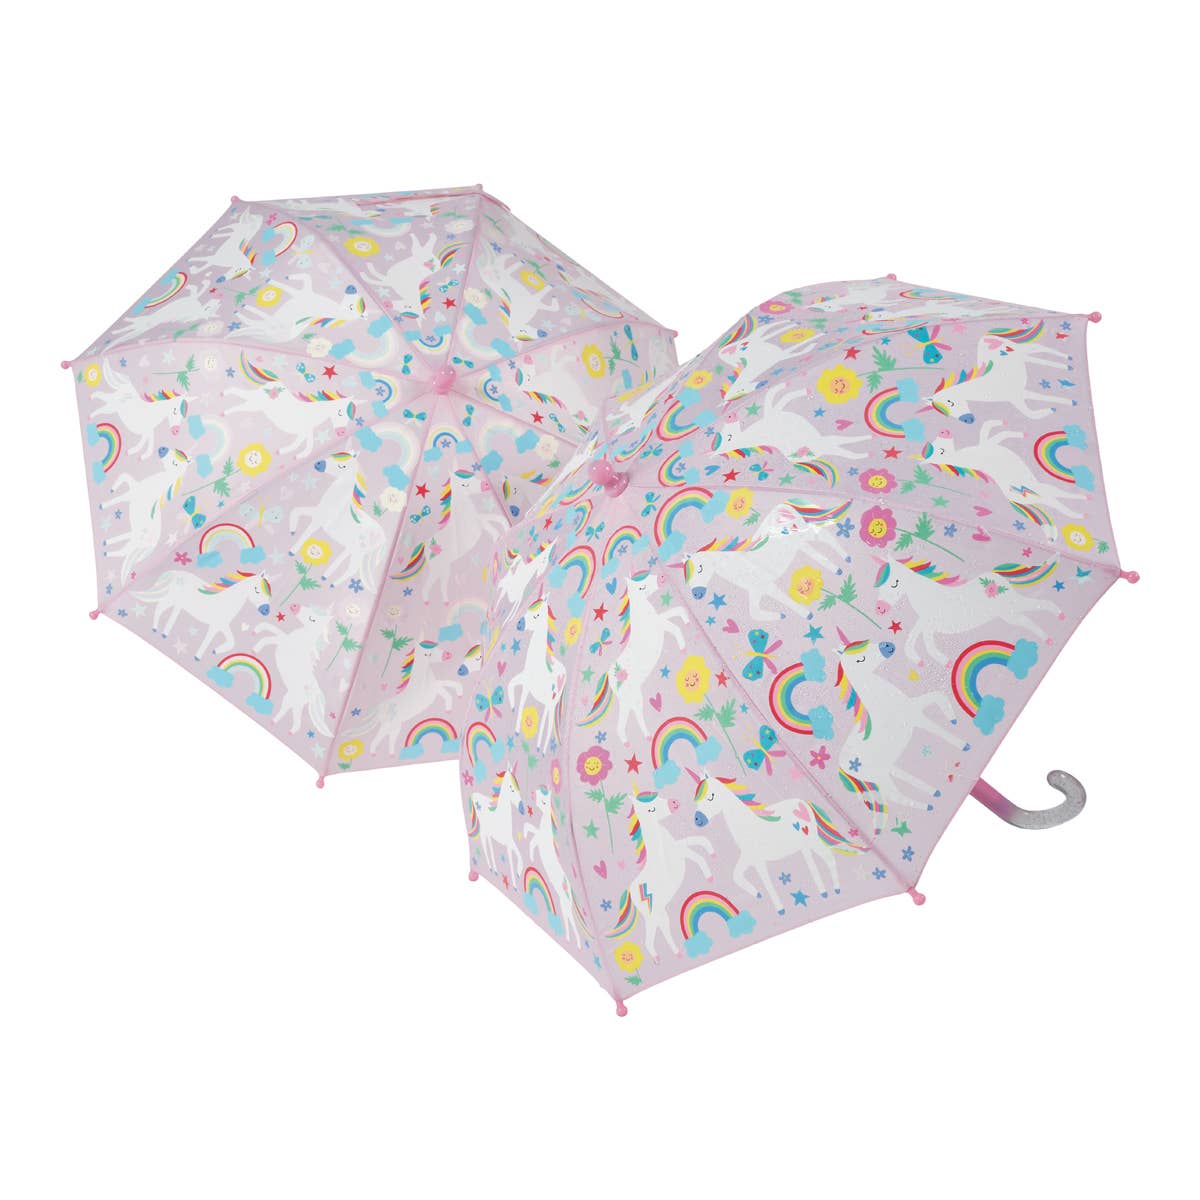 Floss & Rock color changing umbrella